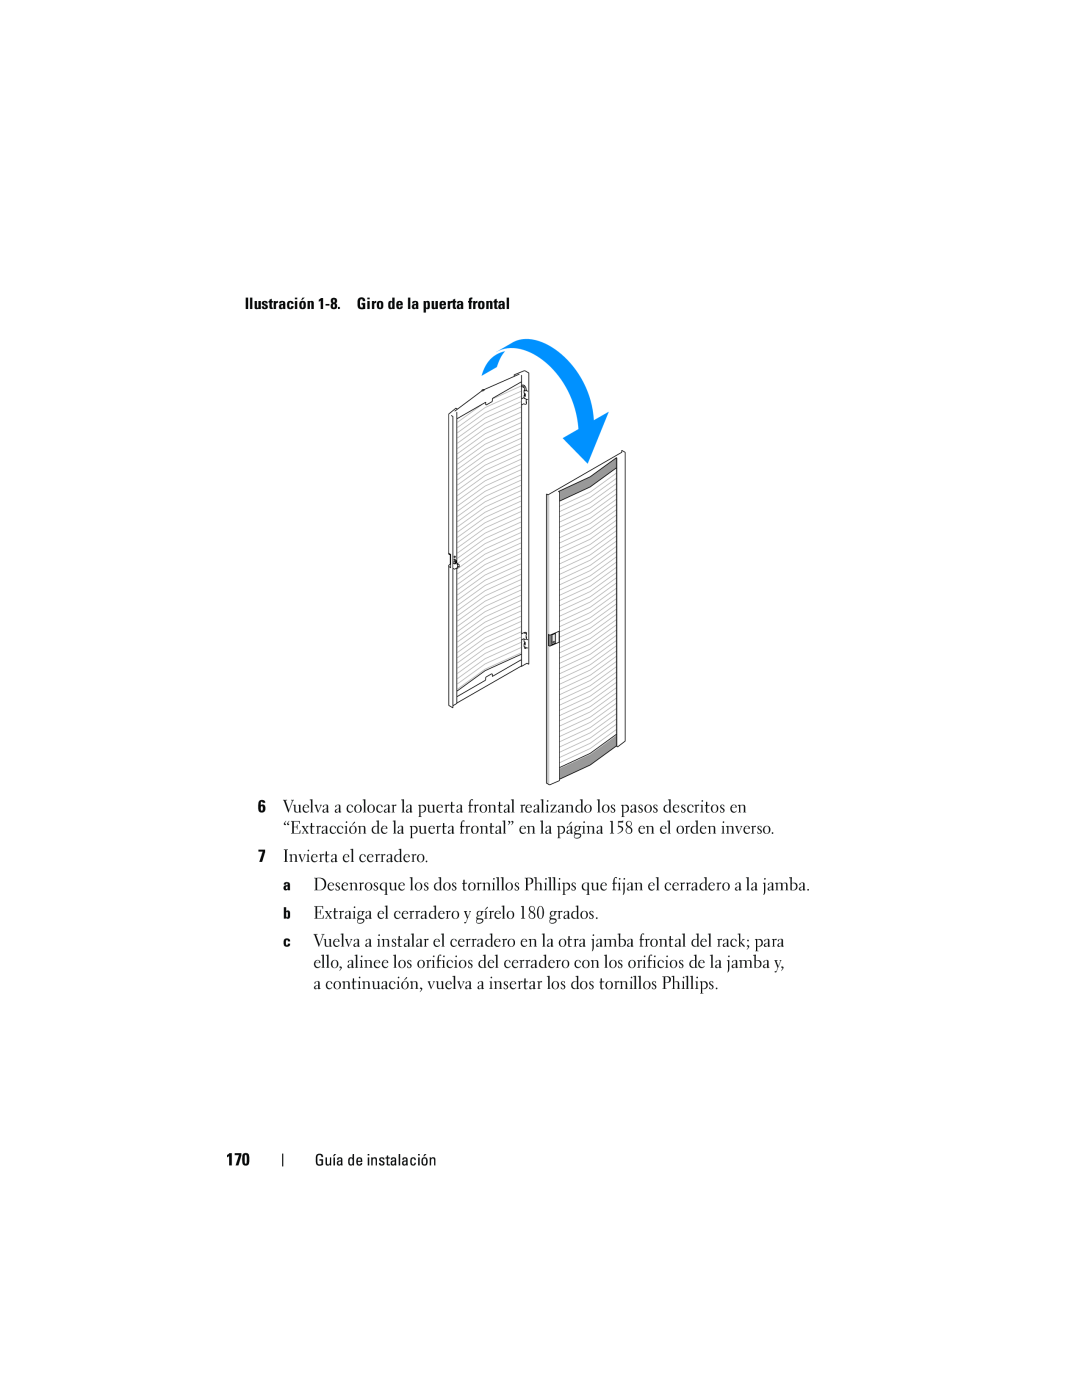 Dell 4220 manual Invierta el cerradero 